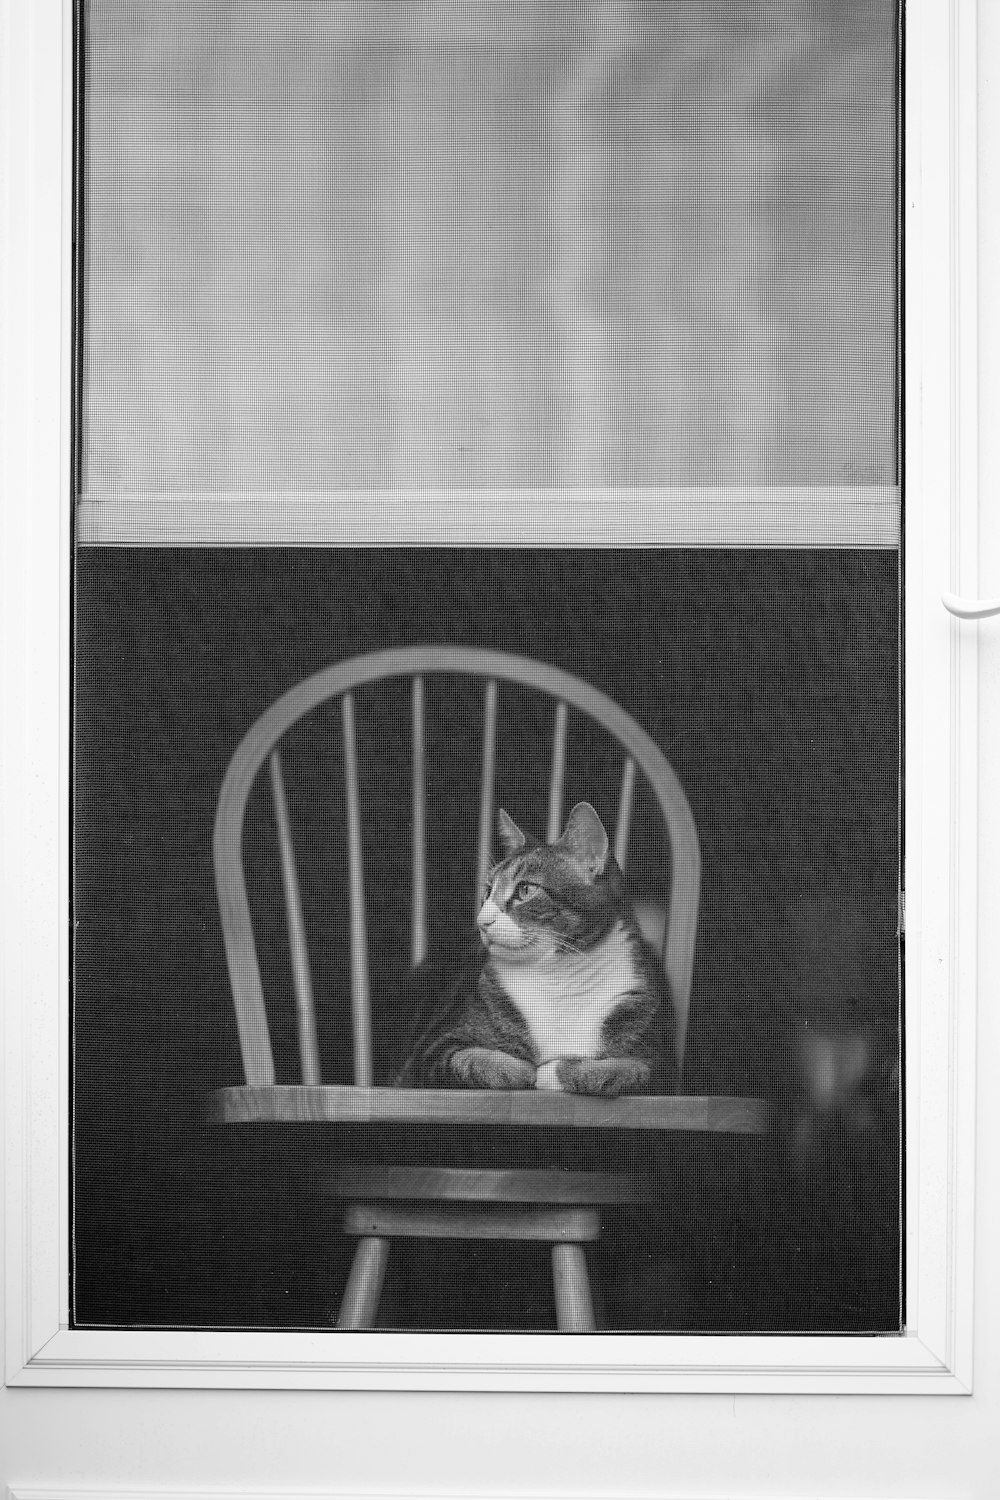 Una foto en blanco y negro de un gato sentado en una silla